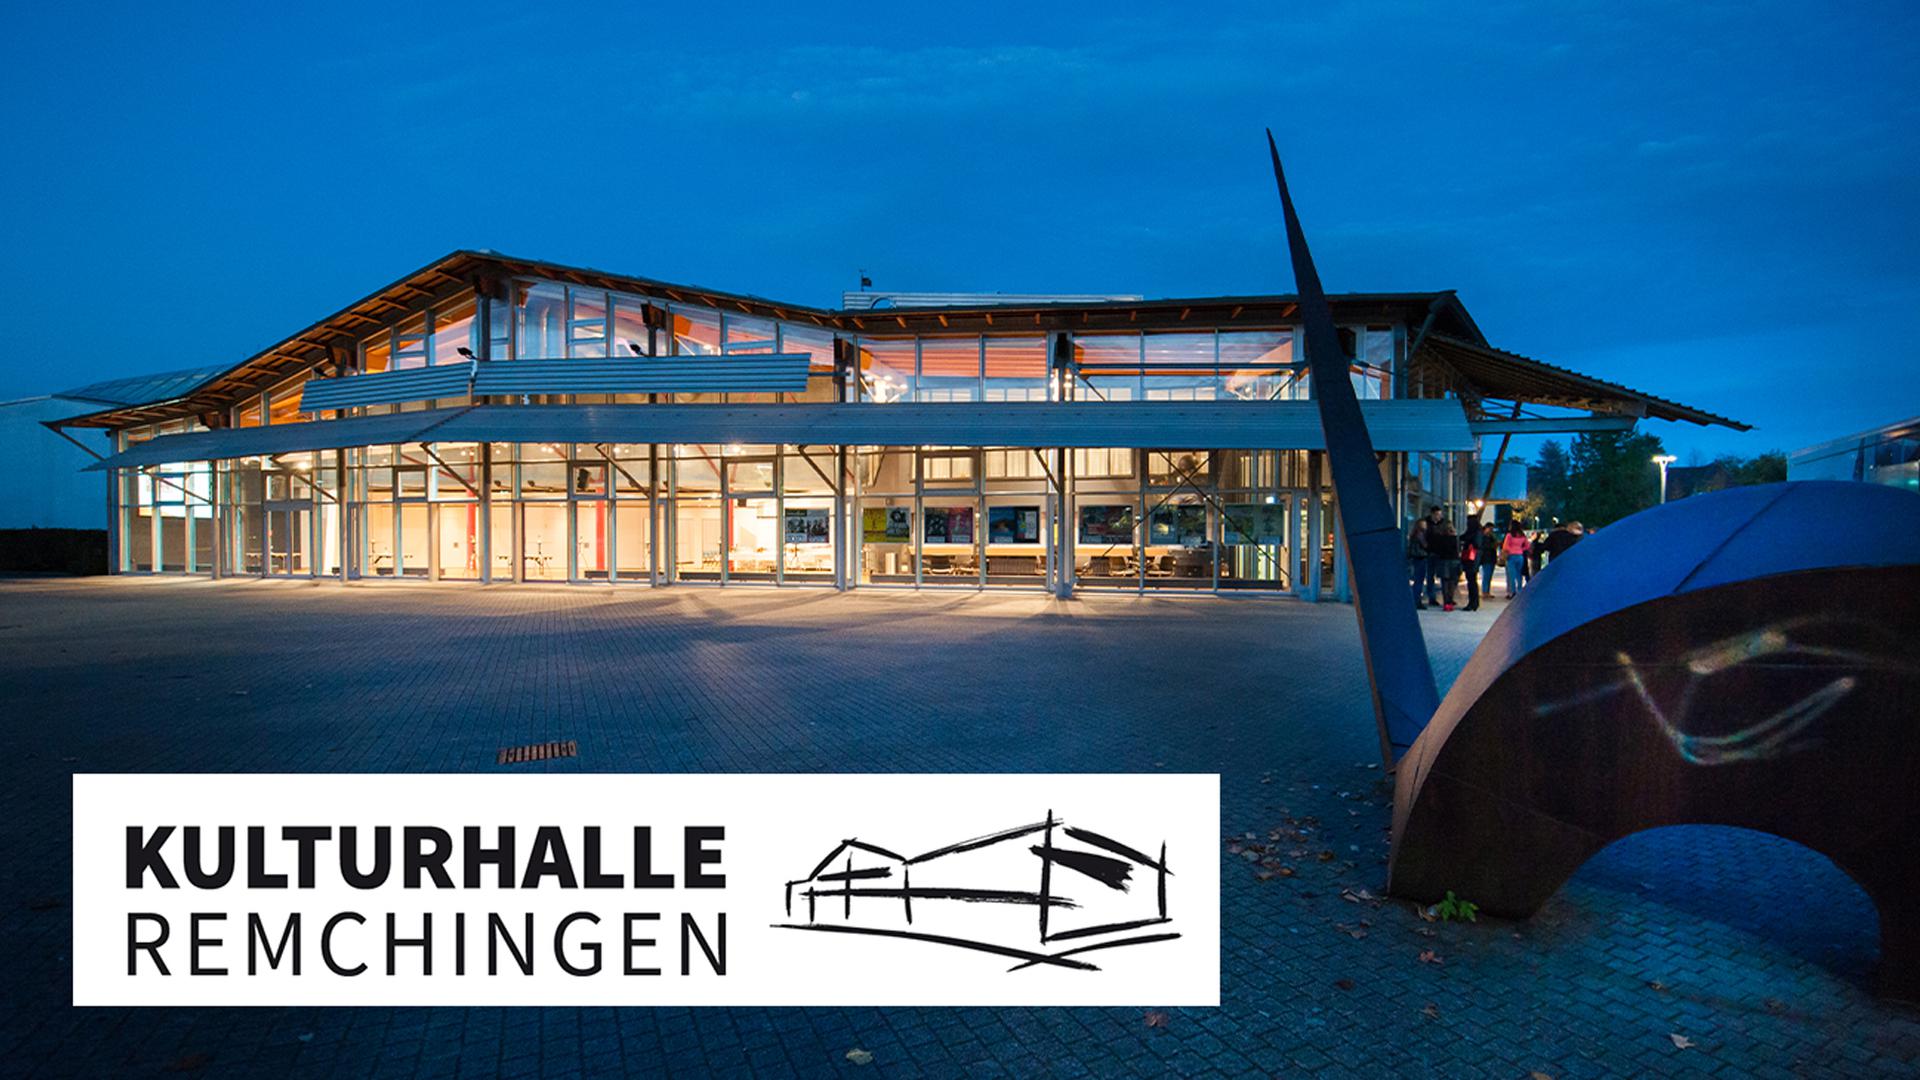 Die Kulturhalle in Remchingen ist kultureller Mittelpunkt der Region Remchingen / Pforzheim / Karlsruhe mit Konzerten, Theater, Comedy und Kabarett.